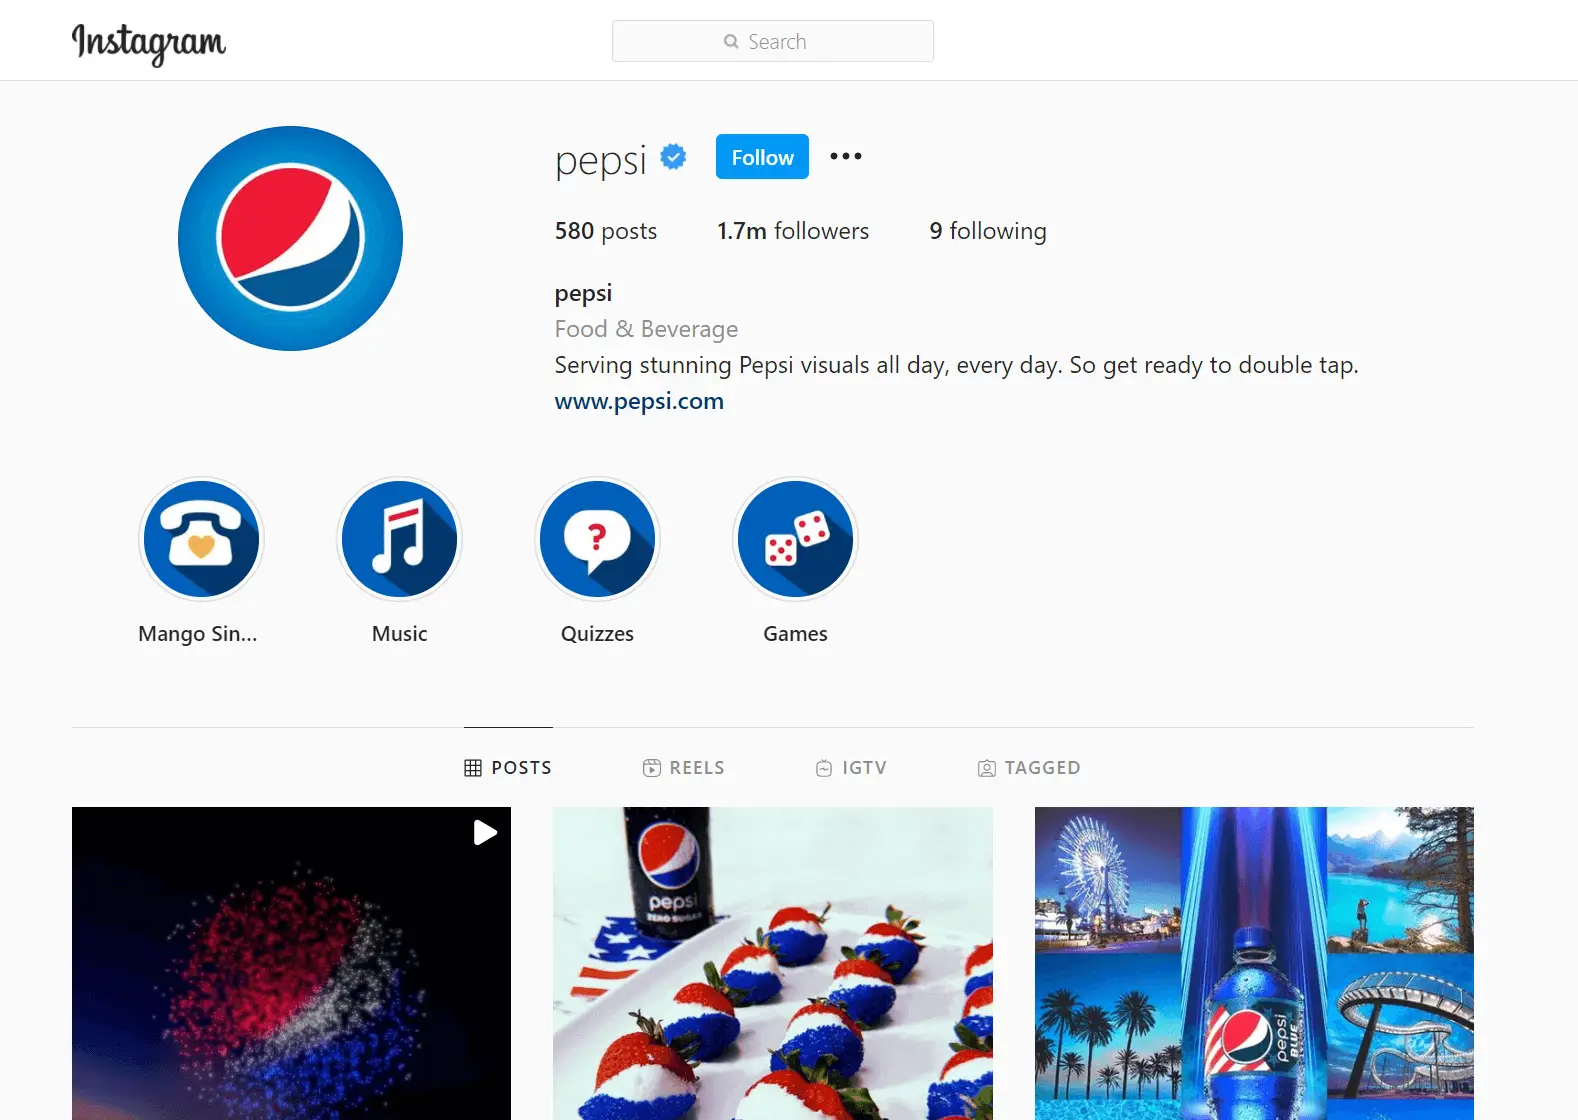 Pepsi's Instagram Profile